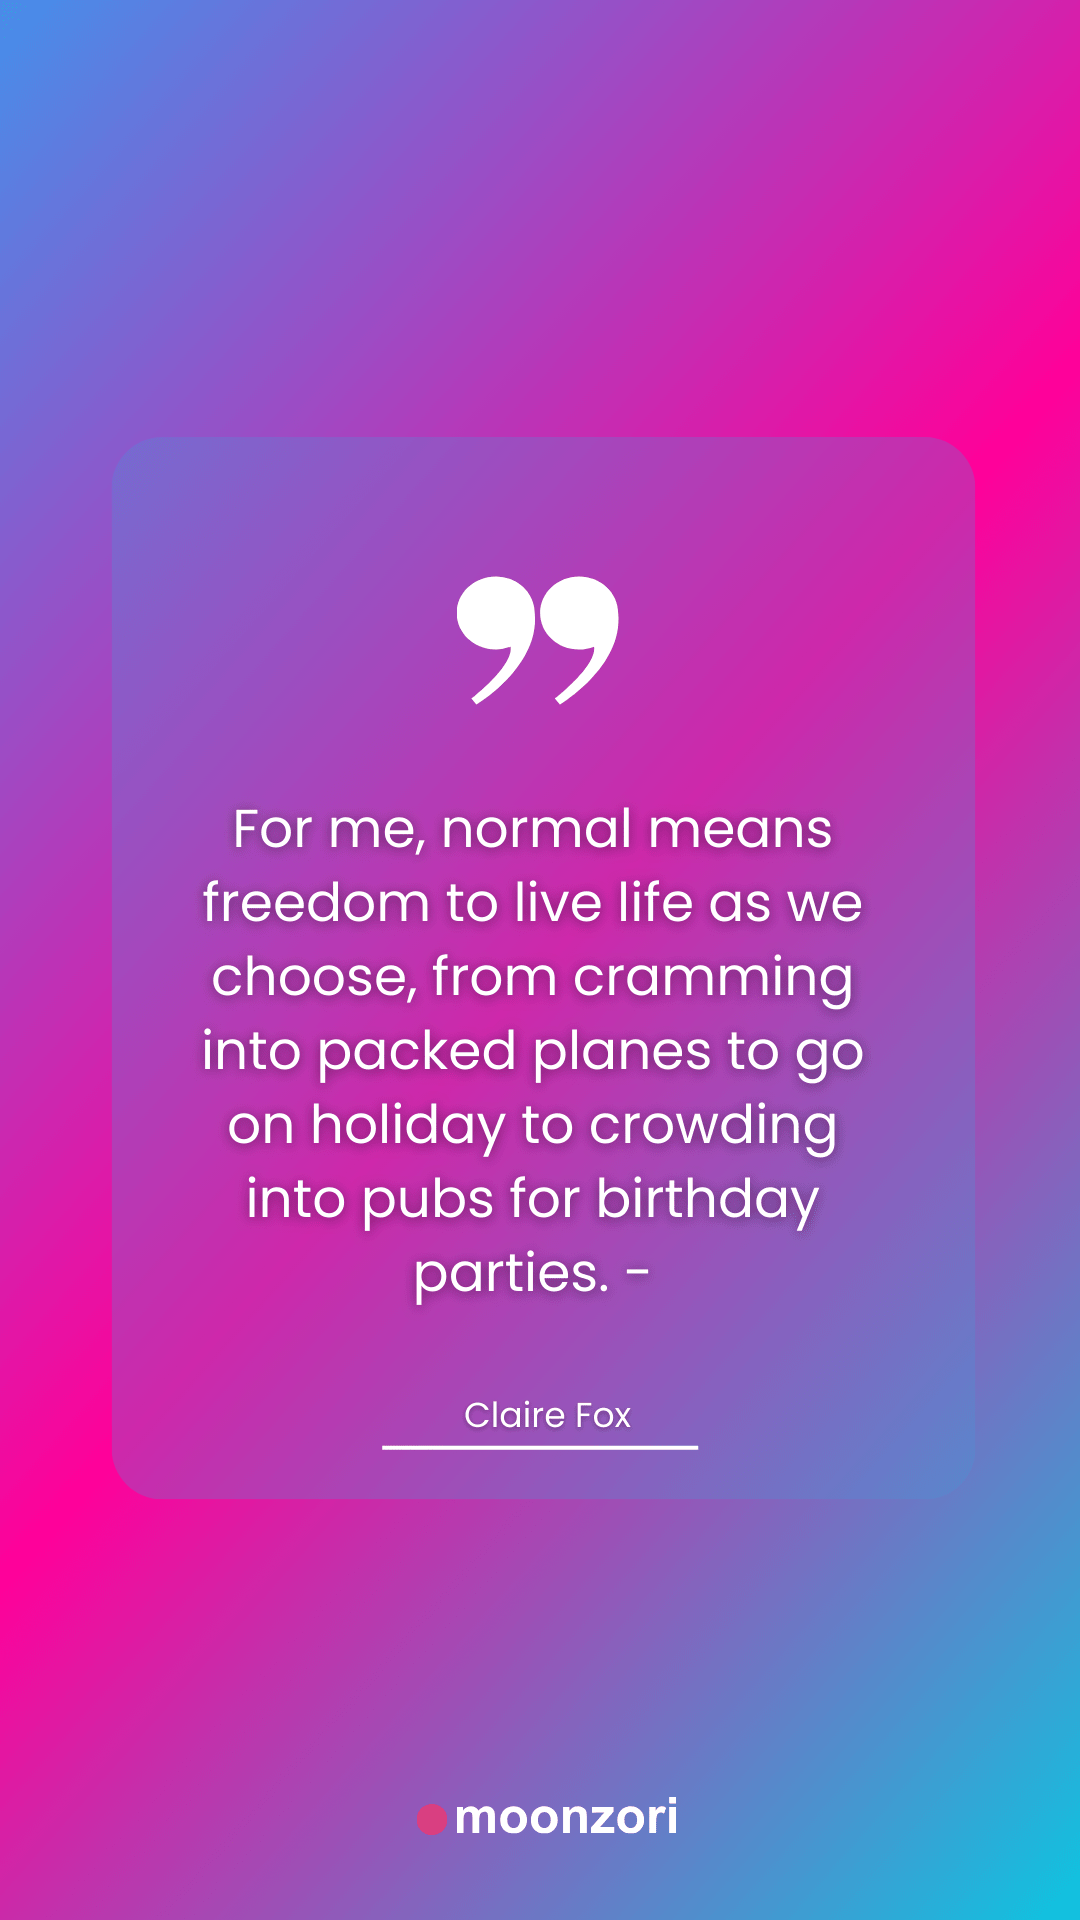 Birthday Quote of Claire Fox - Moonzori Quotes